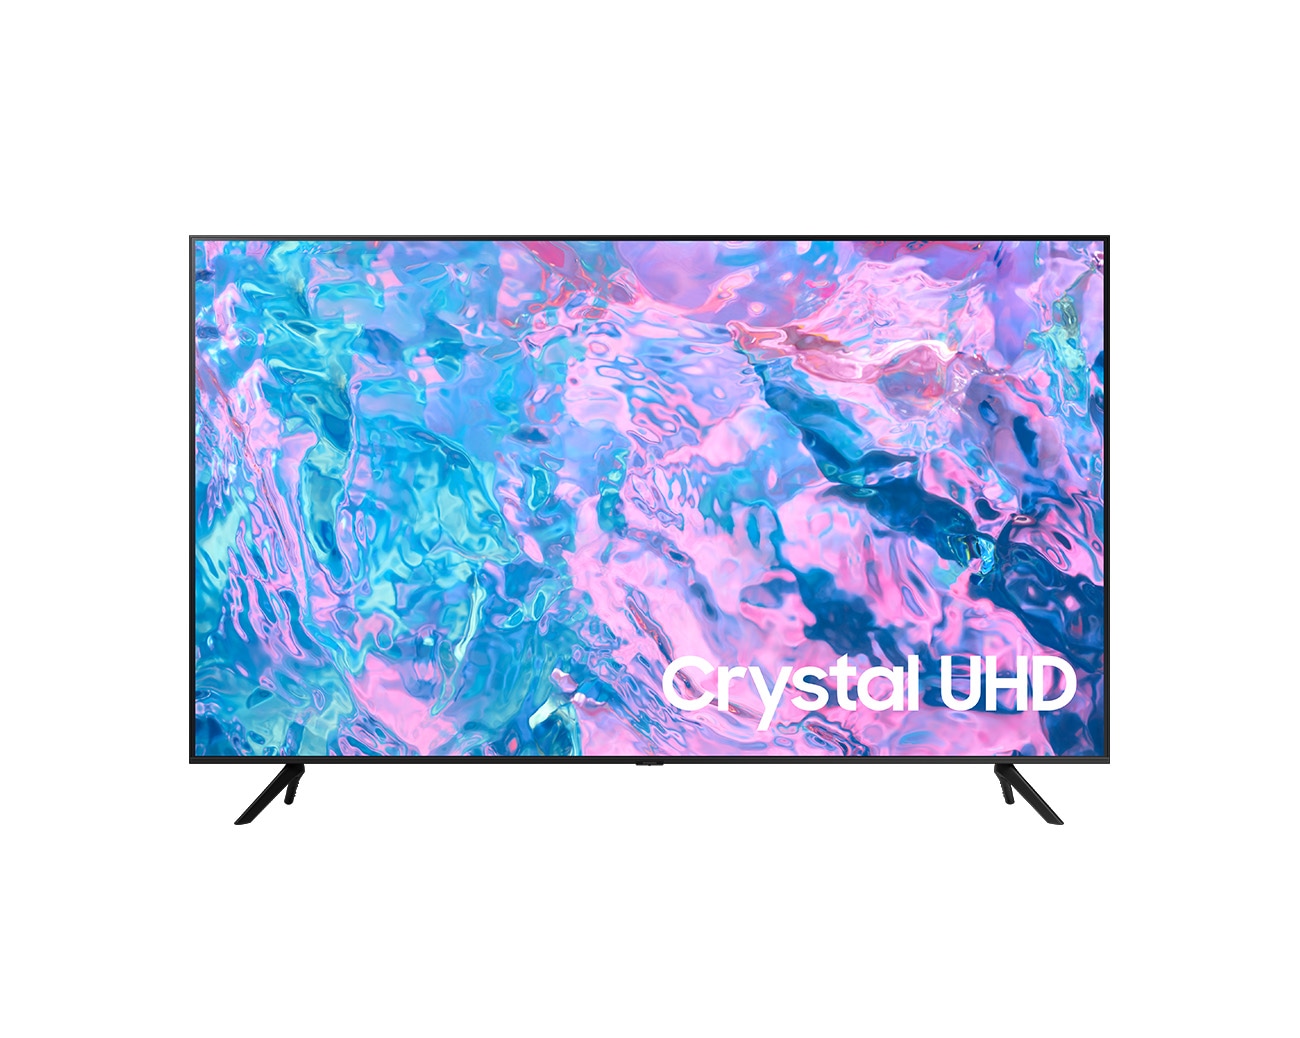 TV CU7000 Crystal UHD 50 pulgadas 2023 - {Price}